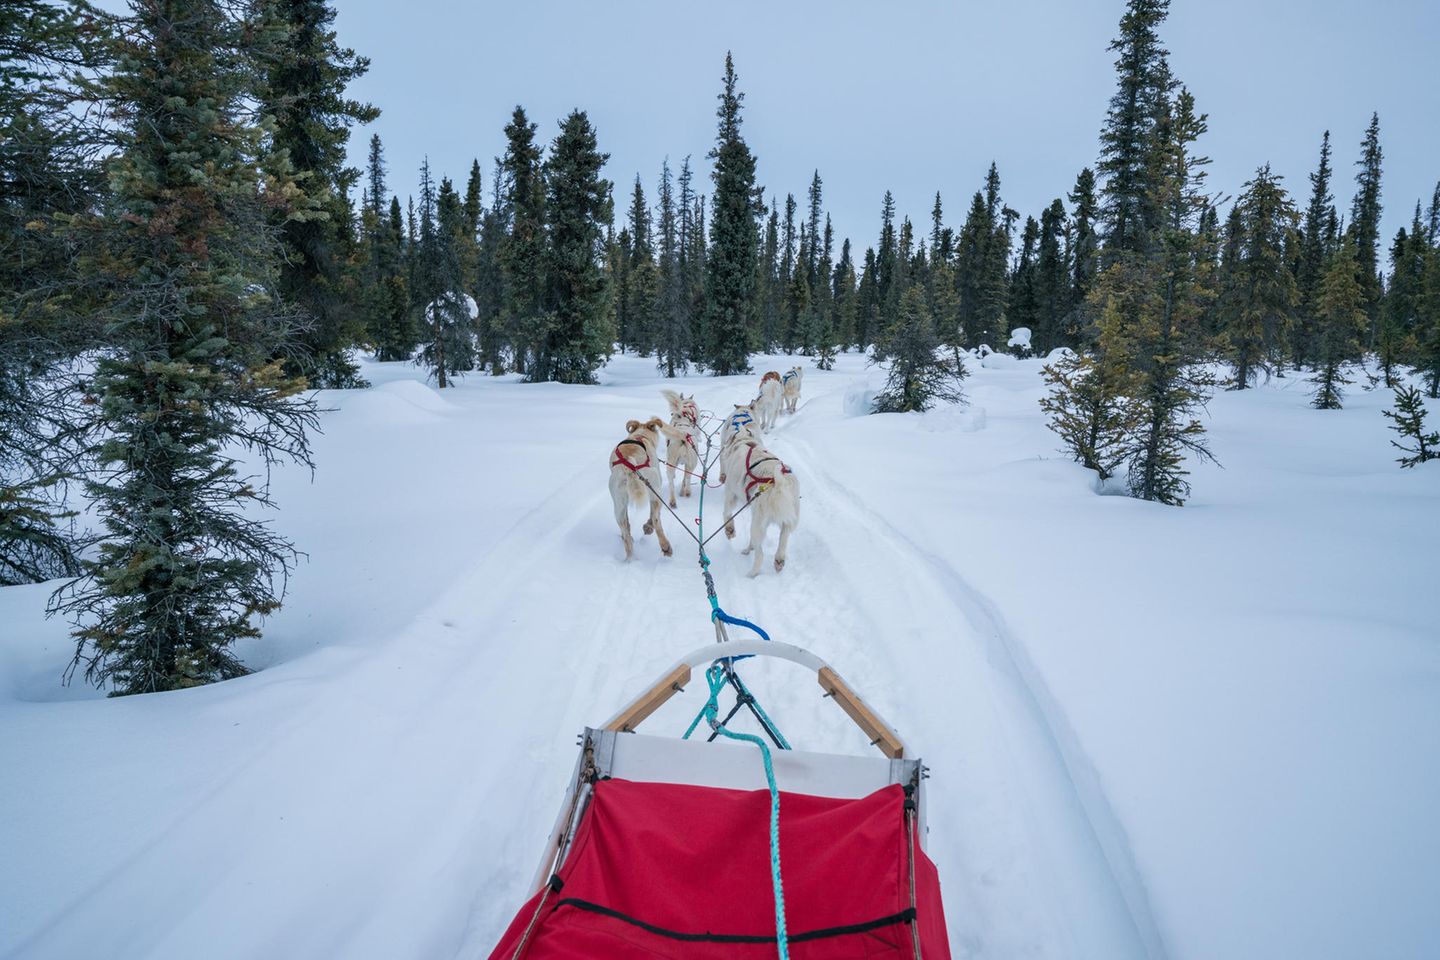 Schlittenhunde ziehen einen Schlitten durch Coldfoot Alaska